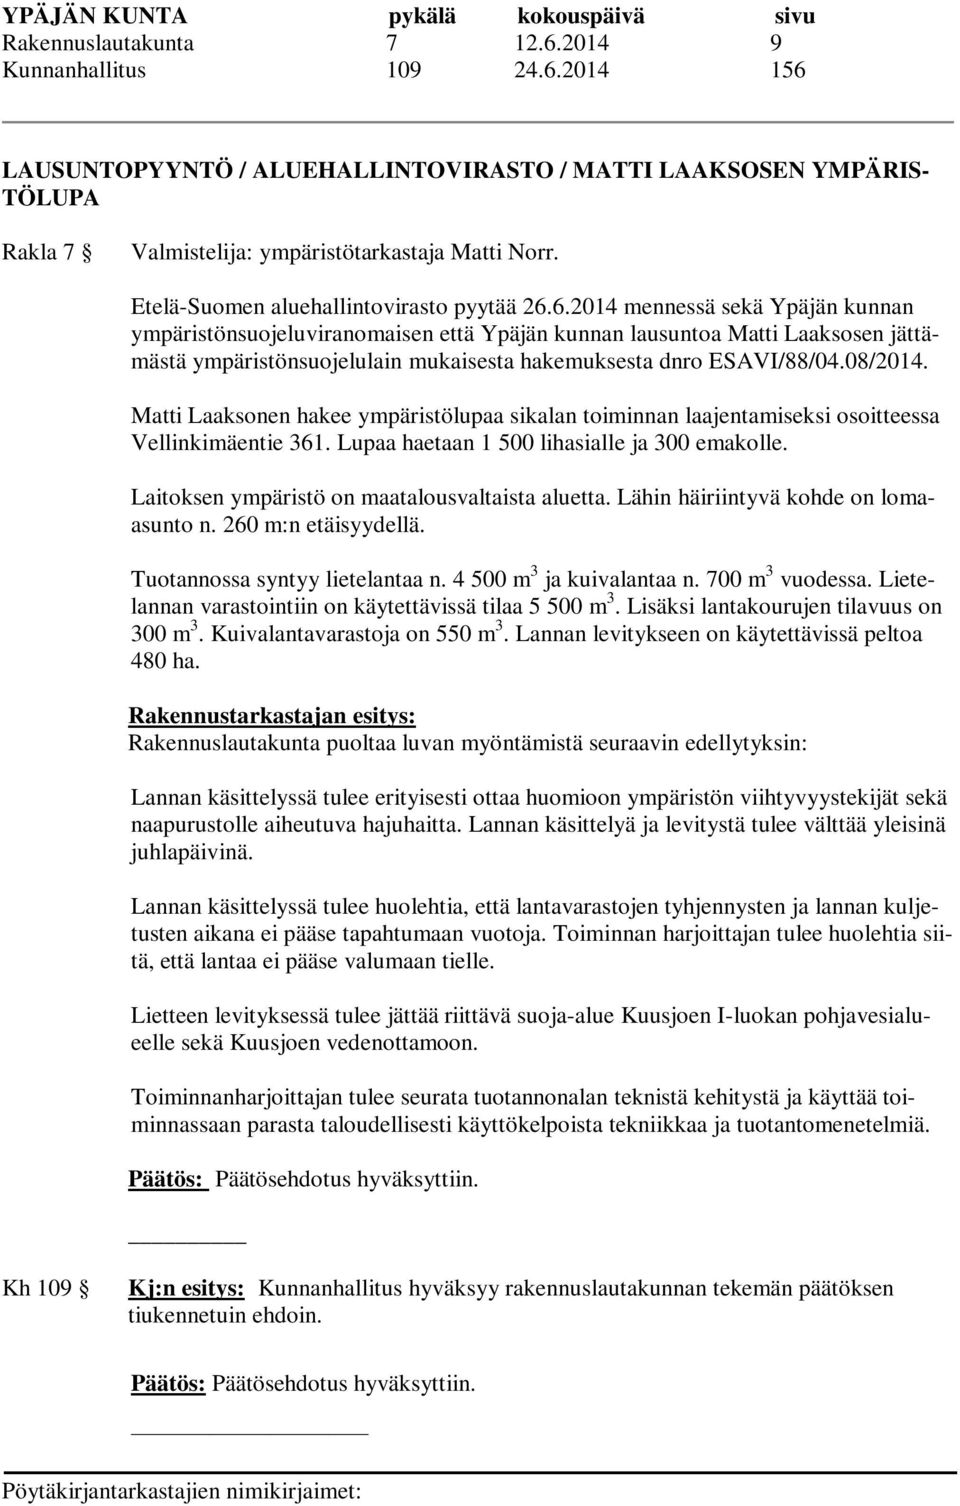 6.2014 mennessä sekä Ypäjän kunnan ympäristönsuojeluviranomaisen että Ypäjän kunnan lausuntoa Matti Laaksosen jättämästä ympäristönsuojelulain mukaisesta hakemuksesta dnro ESAVI/88/04.08/2014.